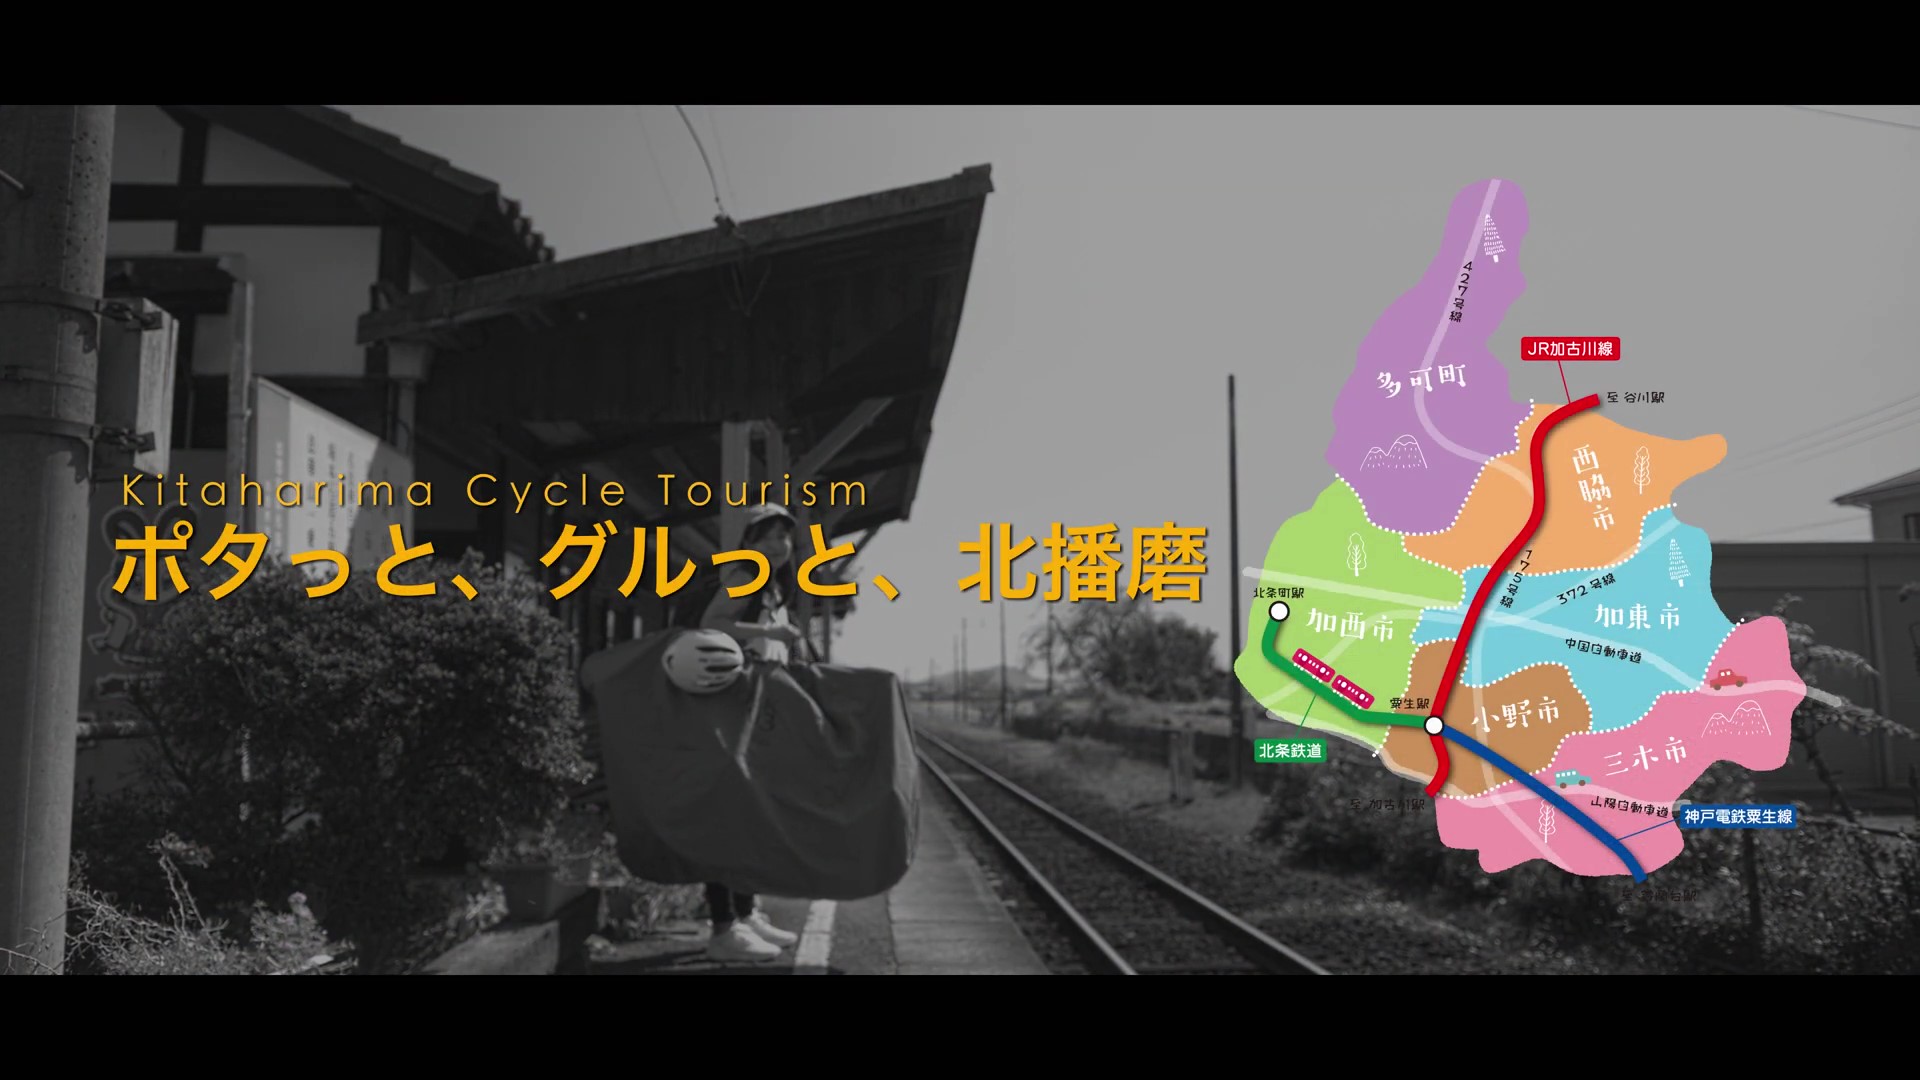 【兵庫県】ポタっと、グルっと、北播磨 Kitaharima Cycle Tourism動画解説